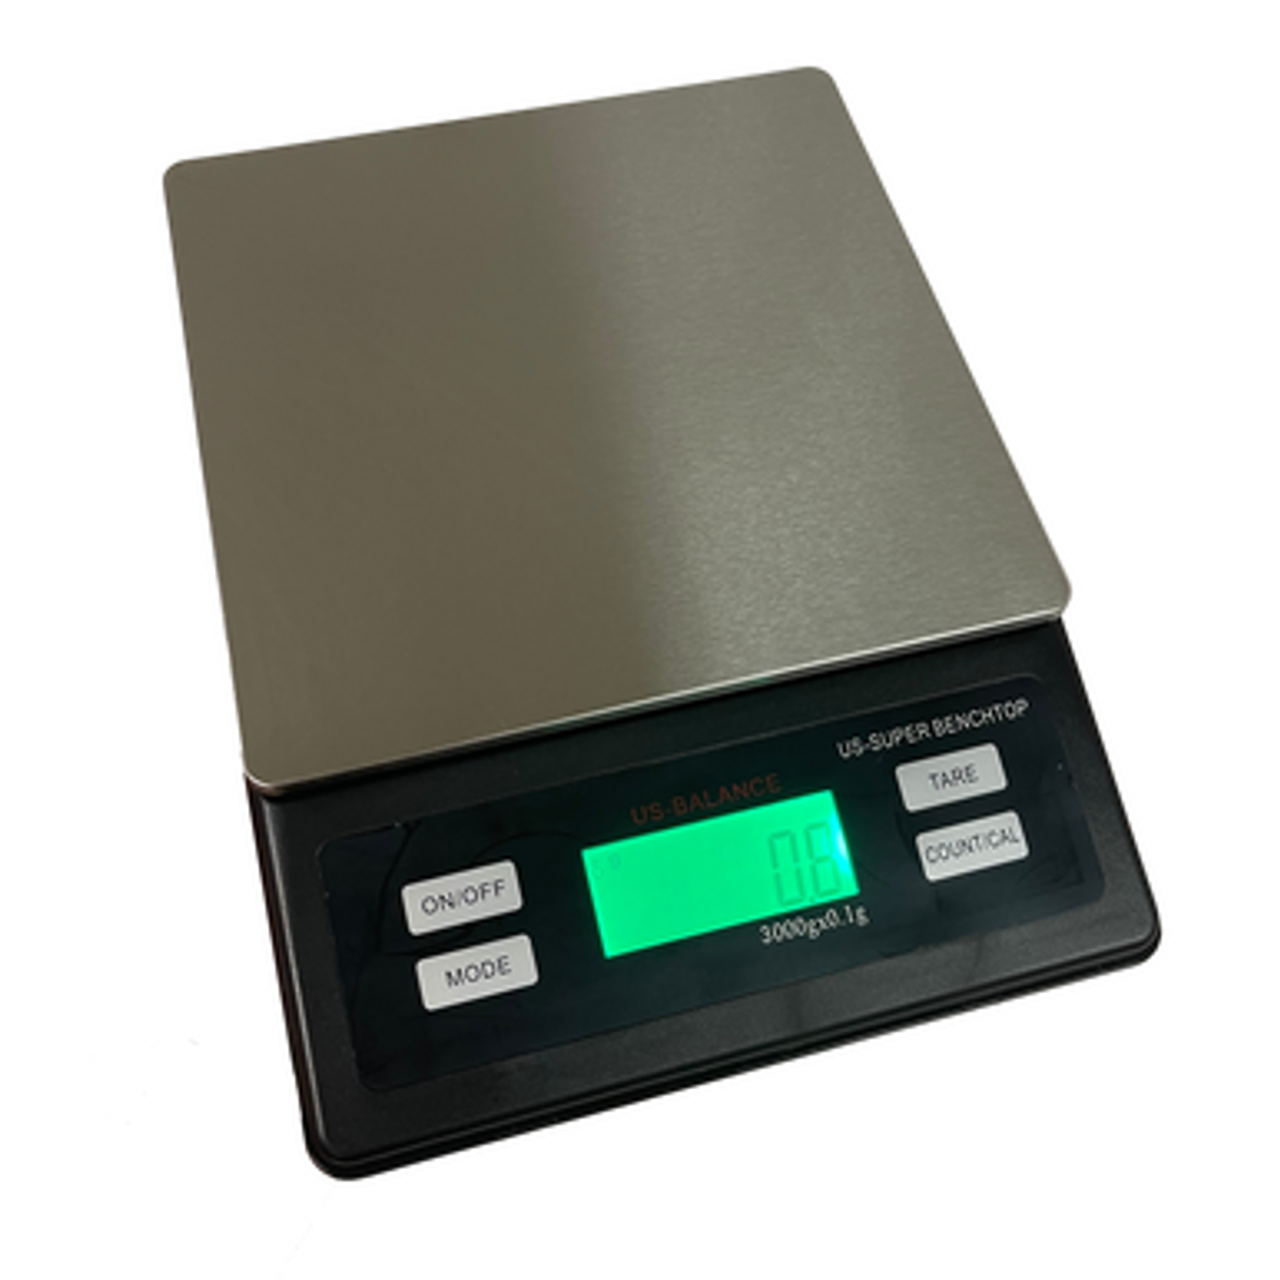 Digital Scale (3000 g/ 6.6 lb)